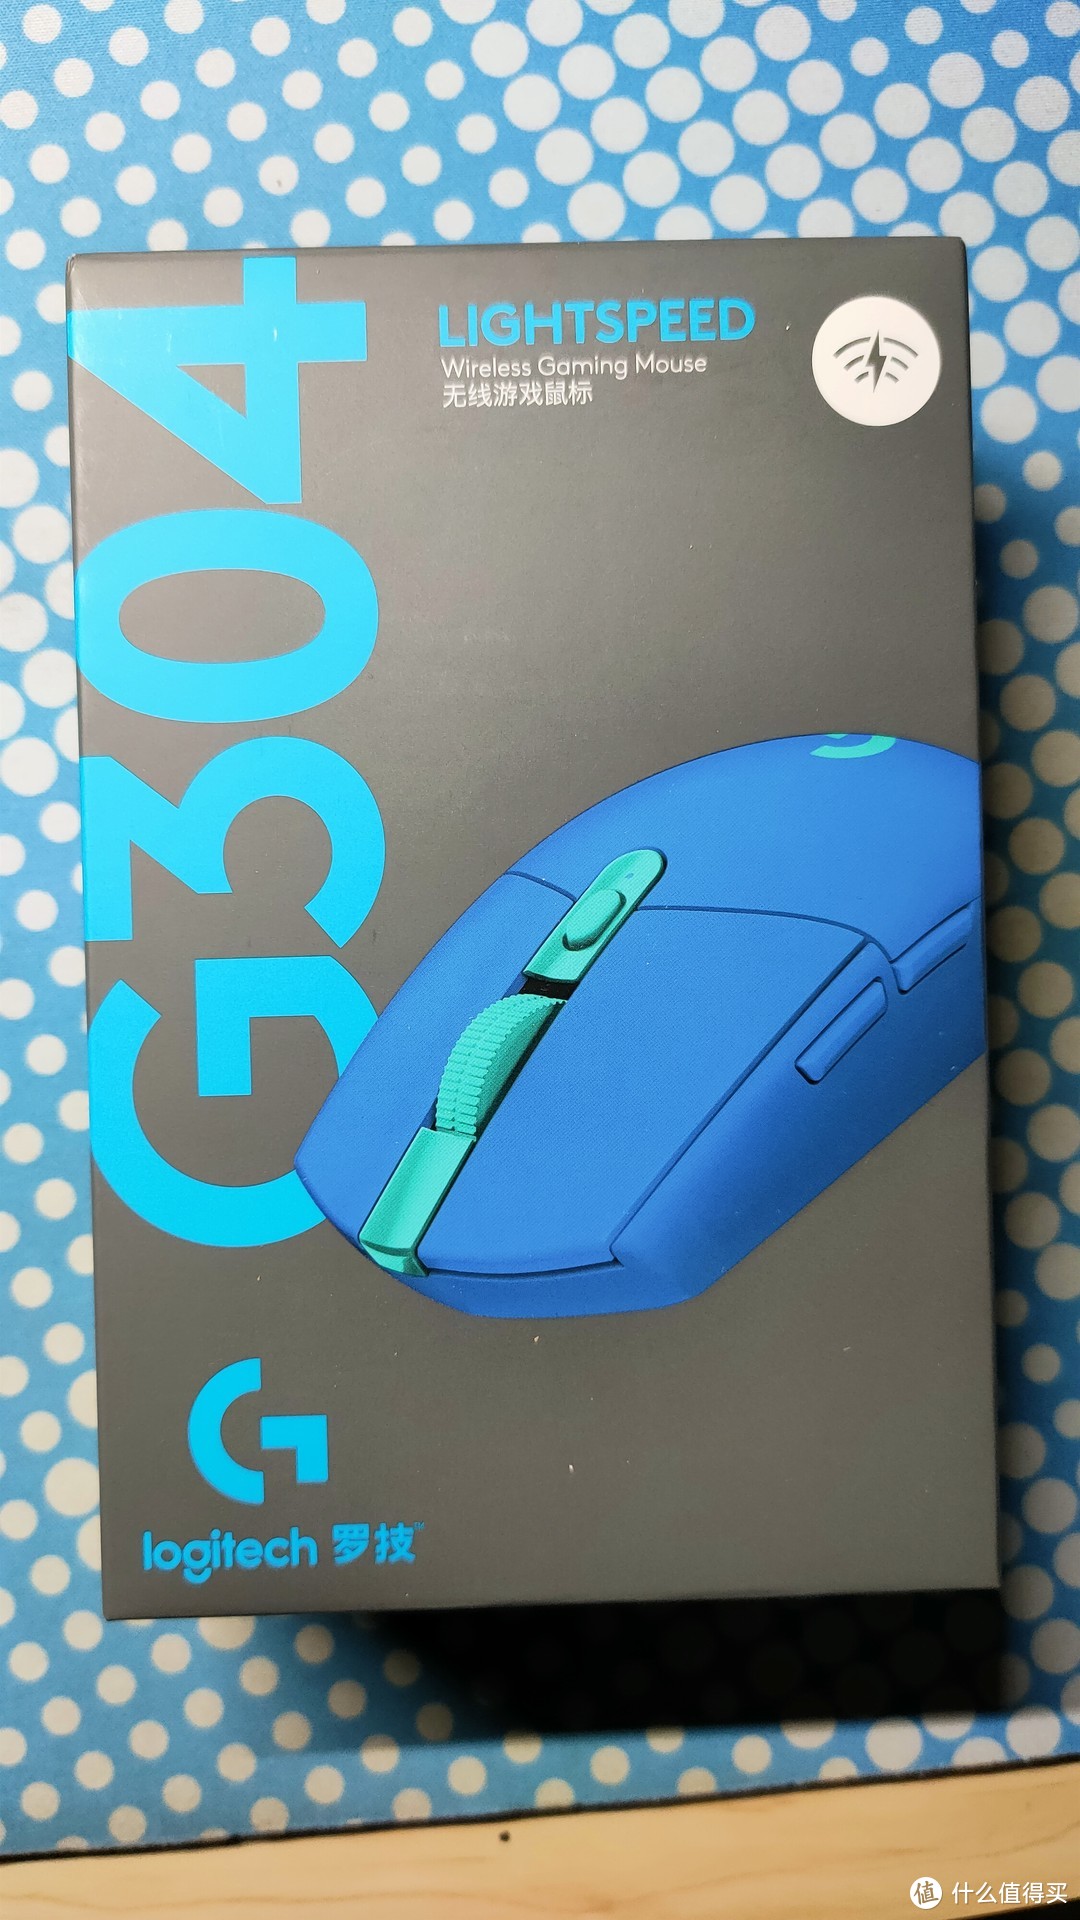 就是喜欢这个模具：科技蓝G304开箱